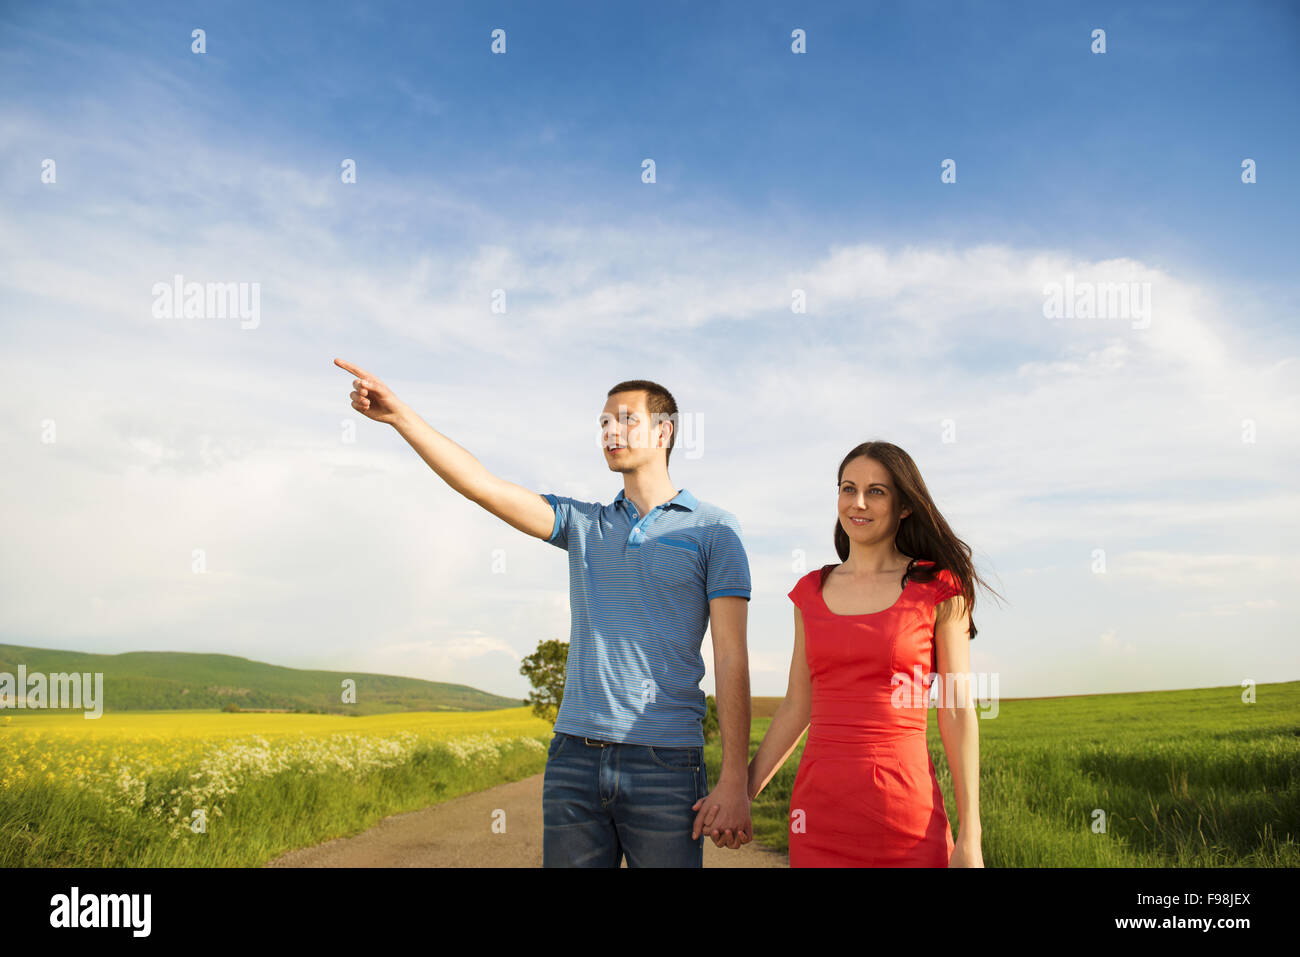 Glückliches junges Paar in Liebe zu Fuß und Hand in Hand unterwegs Landschaft neben dem Raps Feld Stockfoto